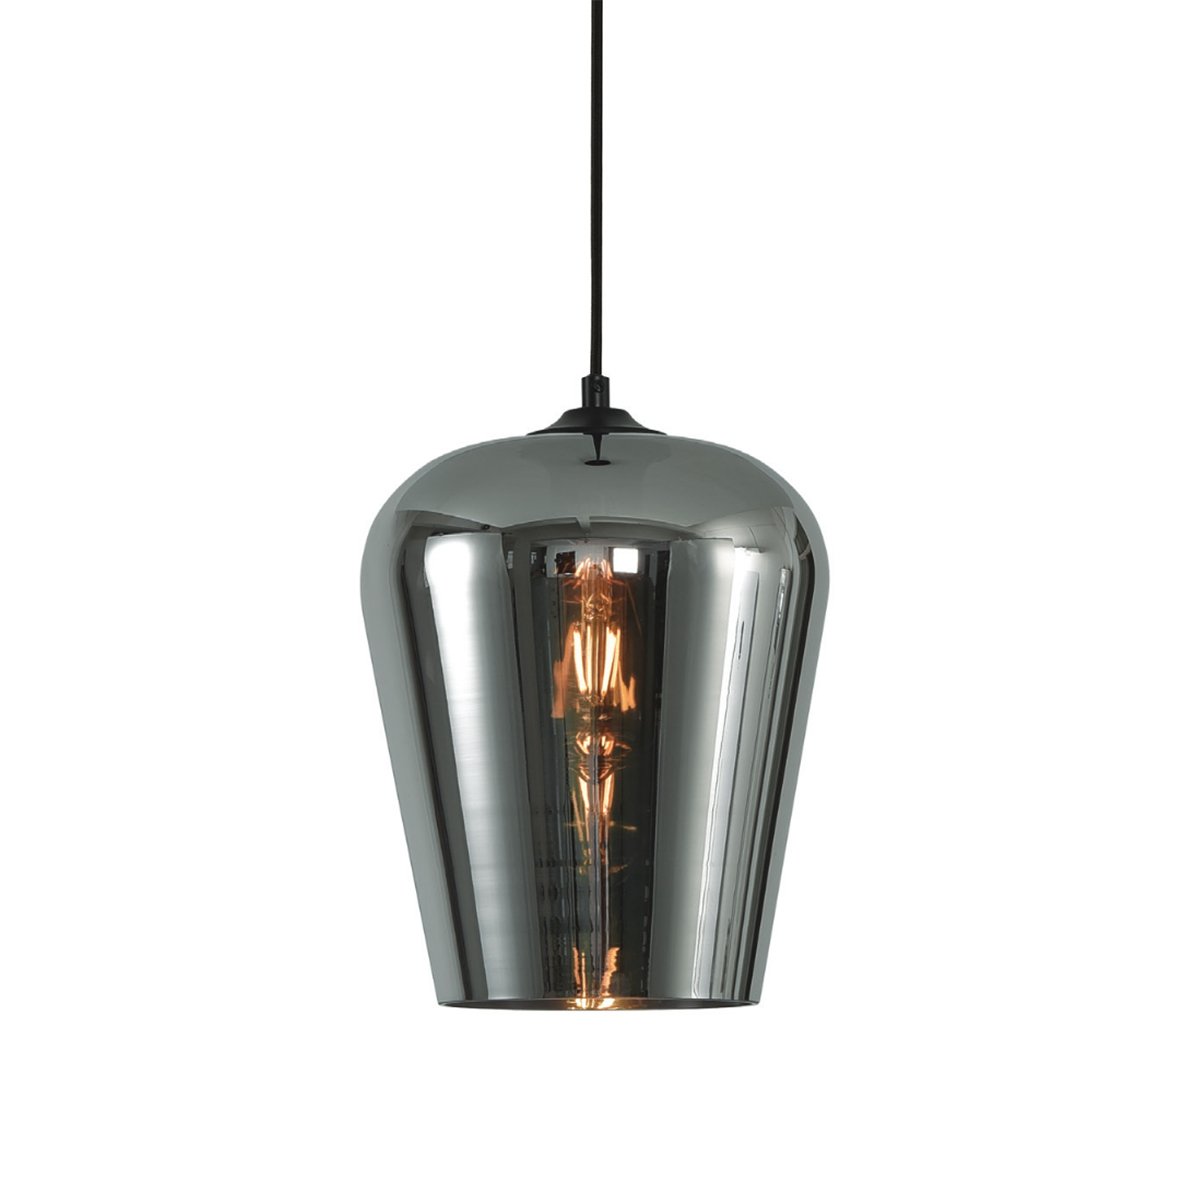 Hængelampe moderne metalglas Alghero - Ø 23 cm